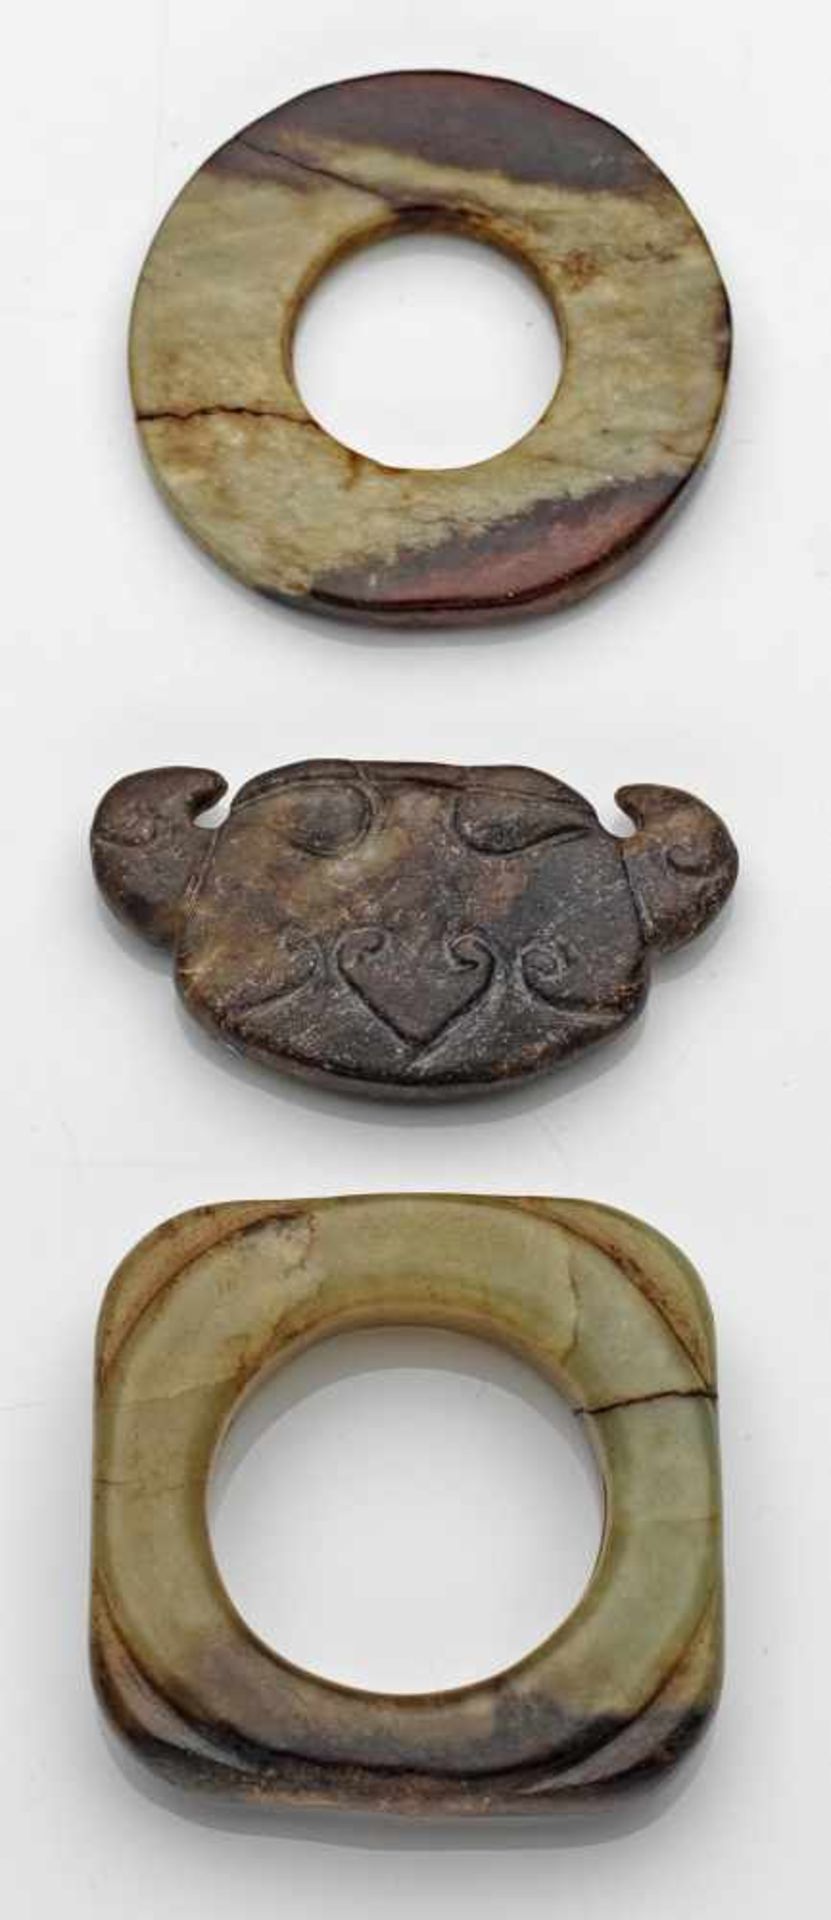 Drei JadeschnitzereienSeladongrün-gelbliche bis rostbraune Nephrit-Jade, geschnitzt. D. 4,5 cm. 2,